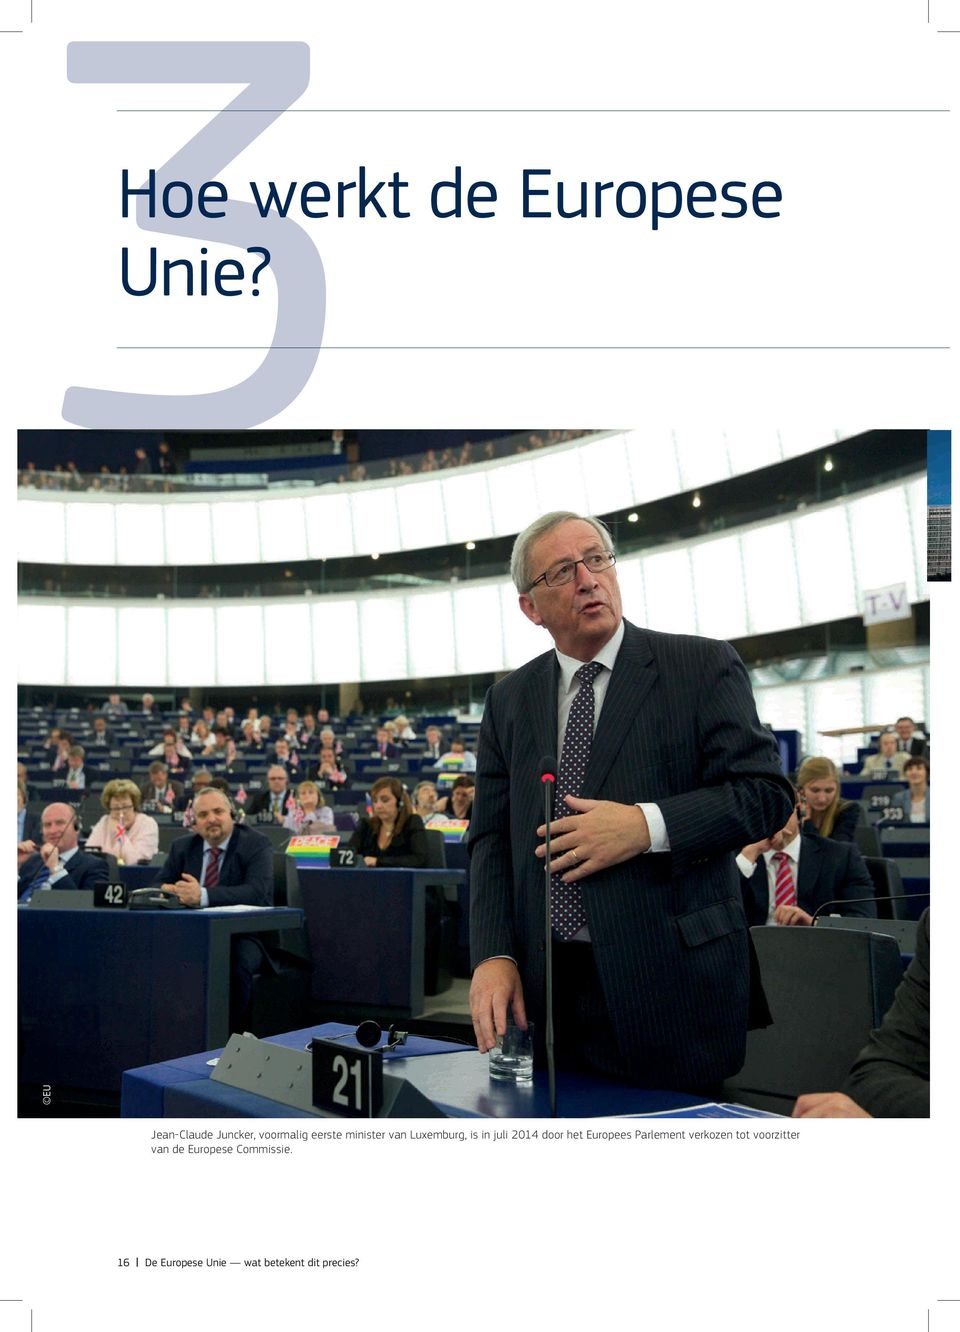 Luxemburg, is in juli 2014 door het Europees Parlement